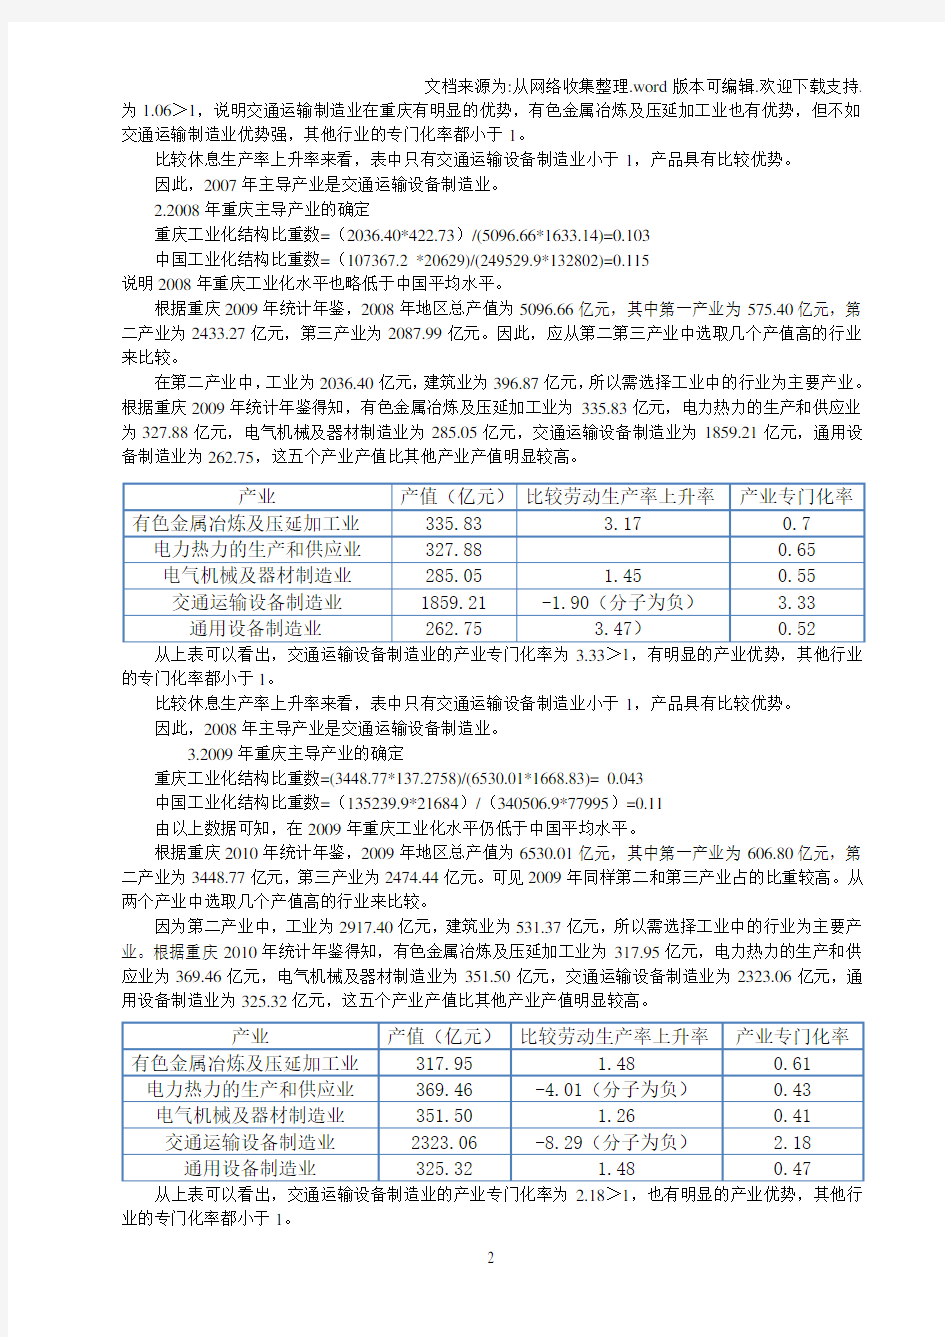 【分析】重庆市主导产业的分析